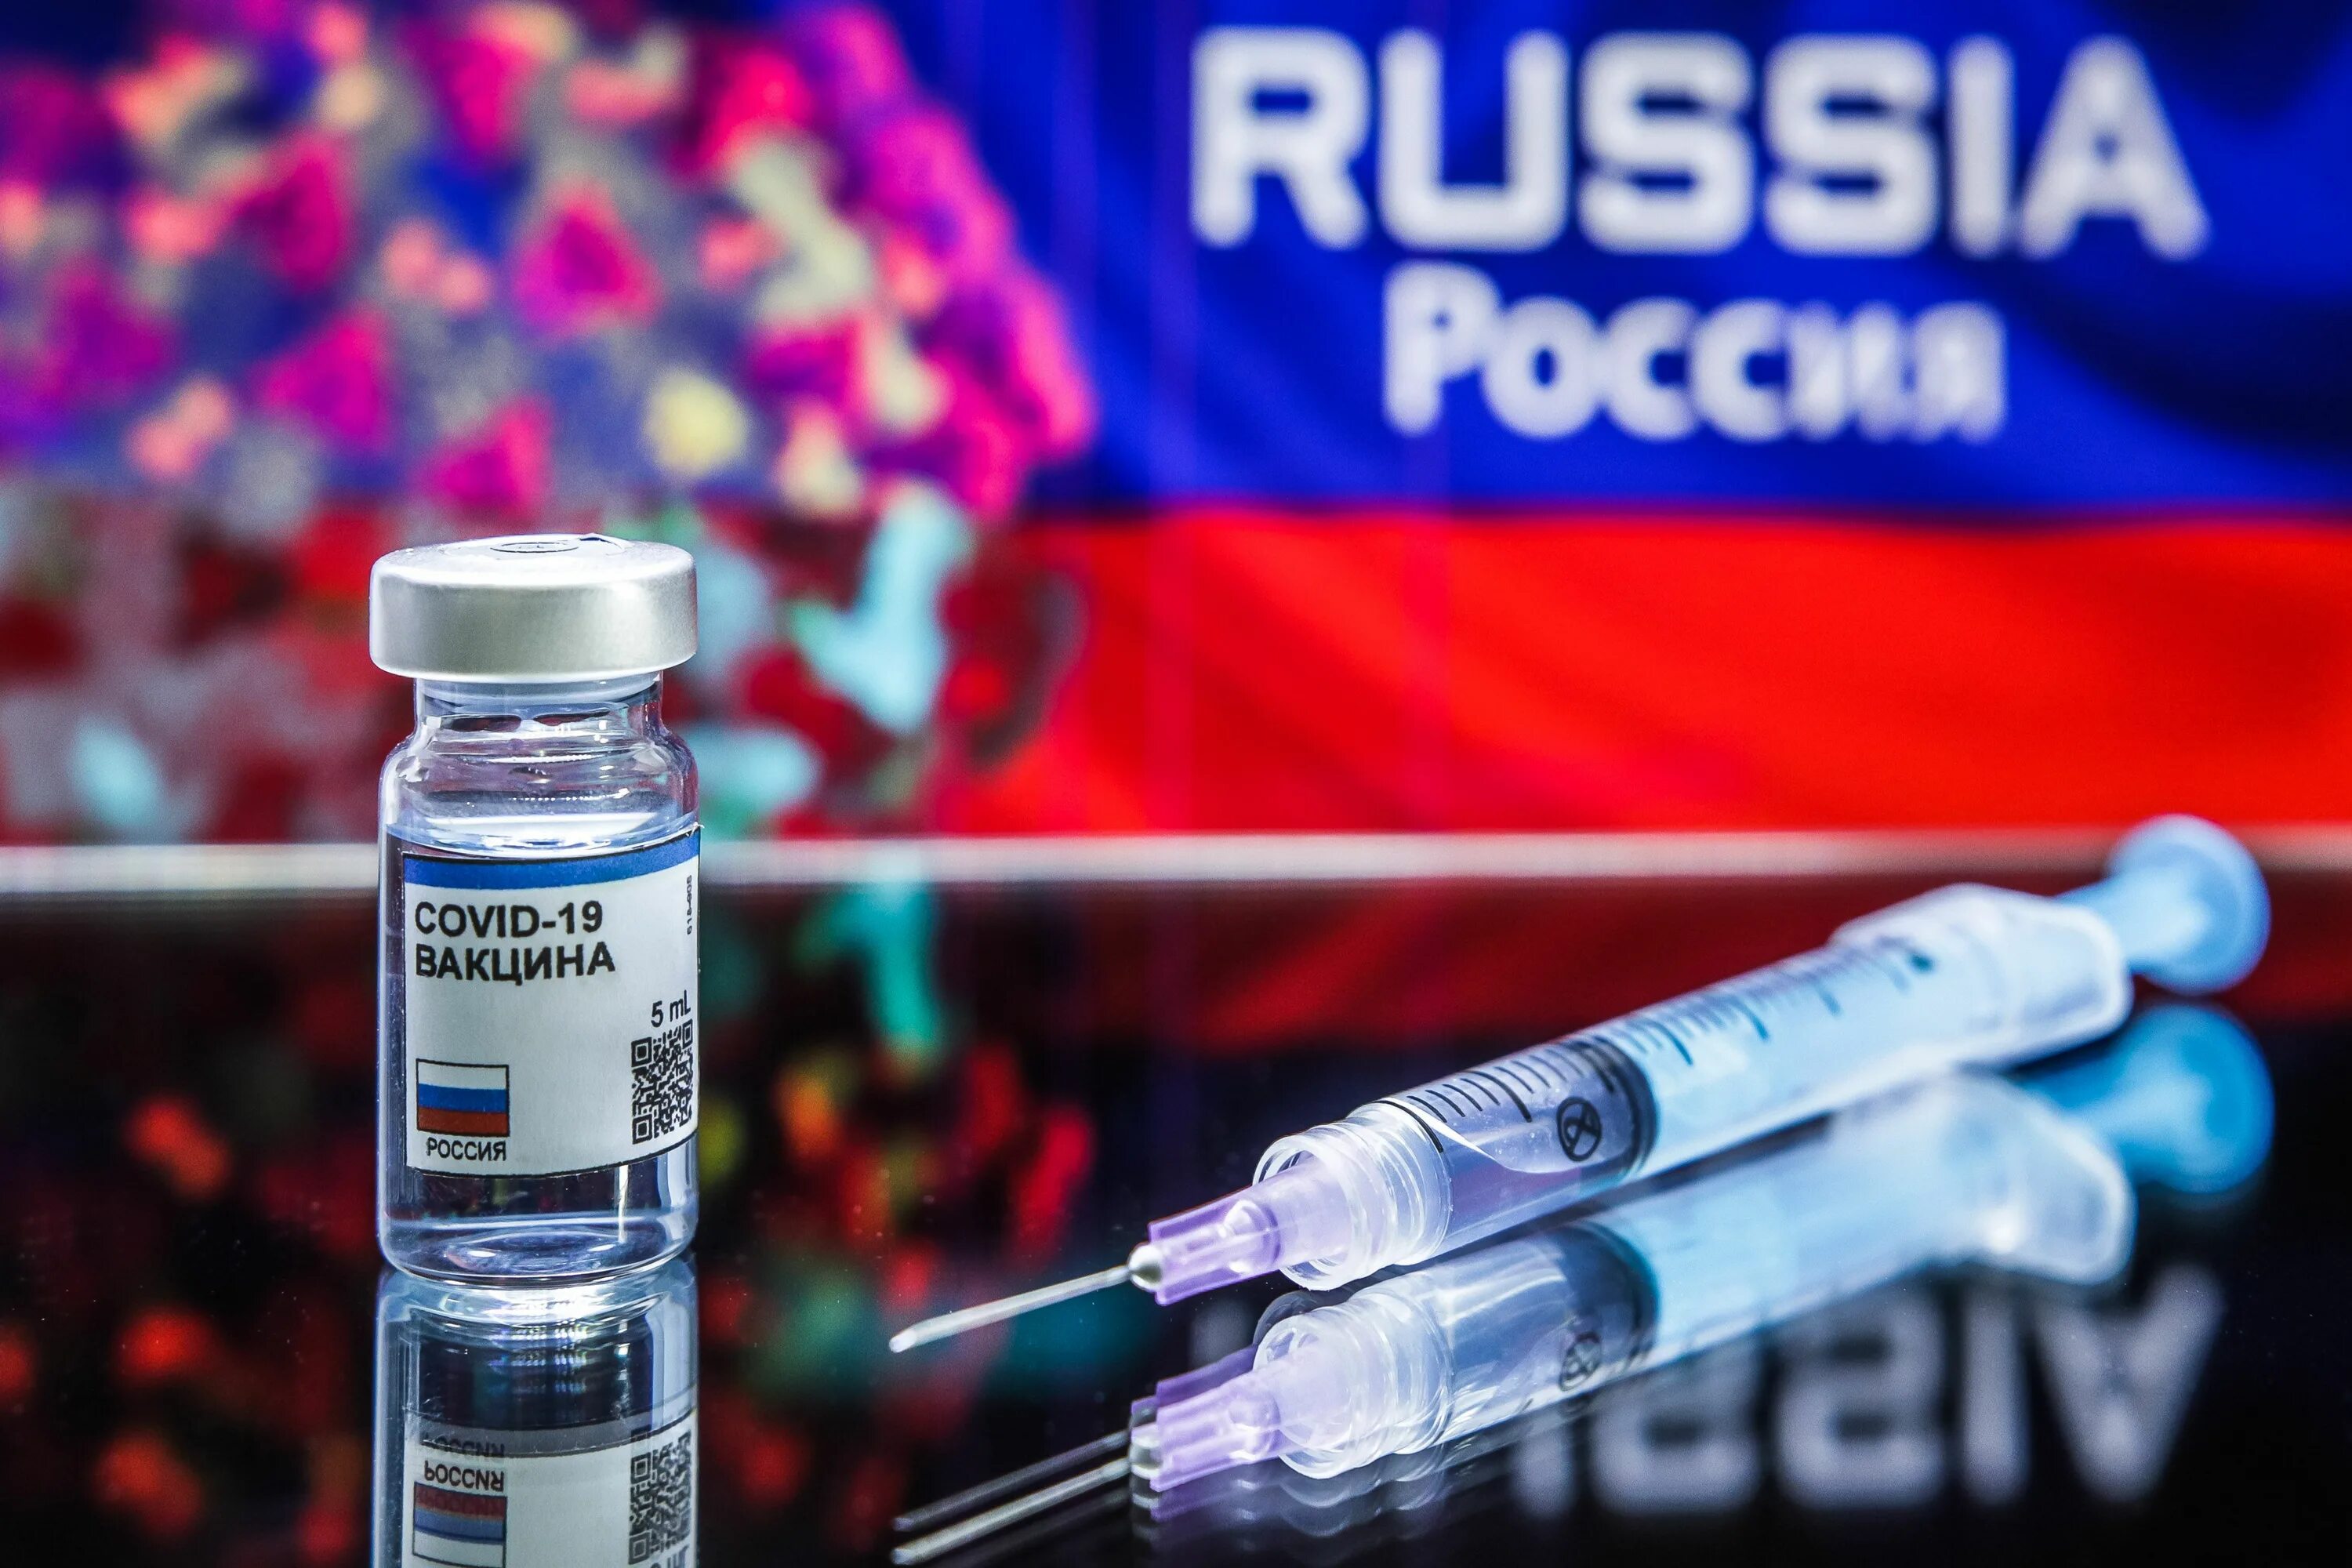 Российская вакцина Спутник. Спутник вакцина от коронавируса. Спутник 5 вакцина. Российские вакцины от коронавируса. Испытанные вакцины